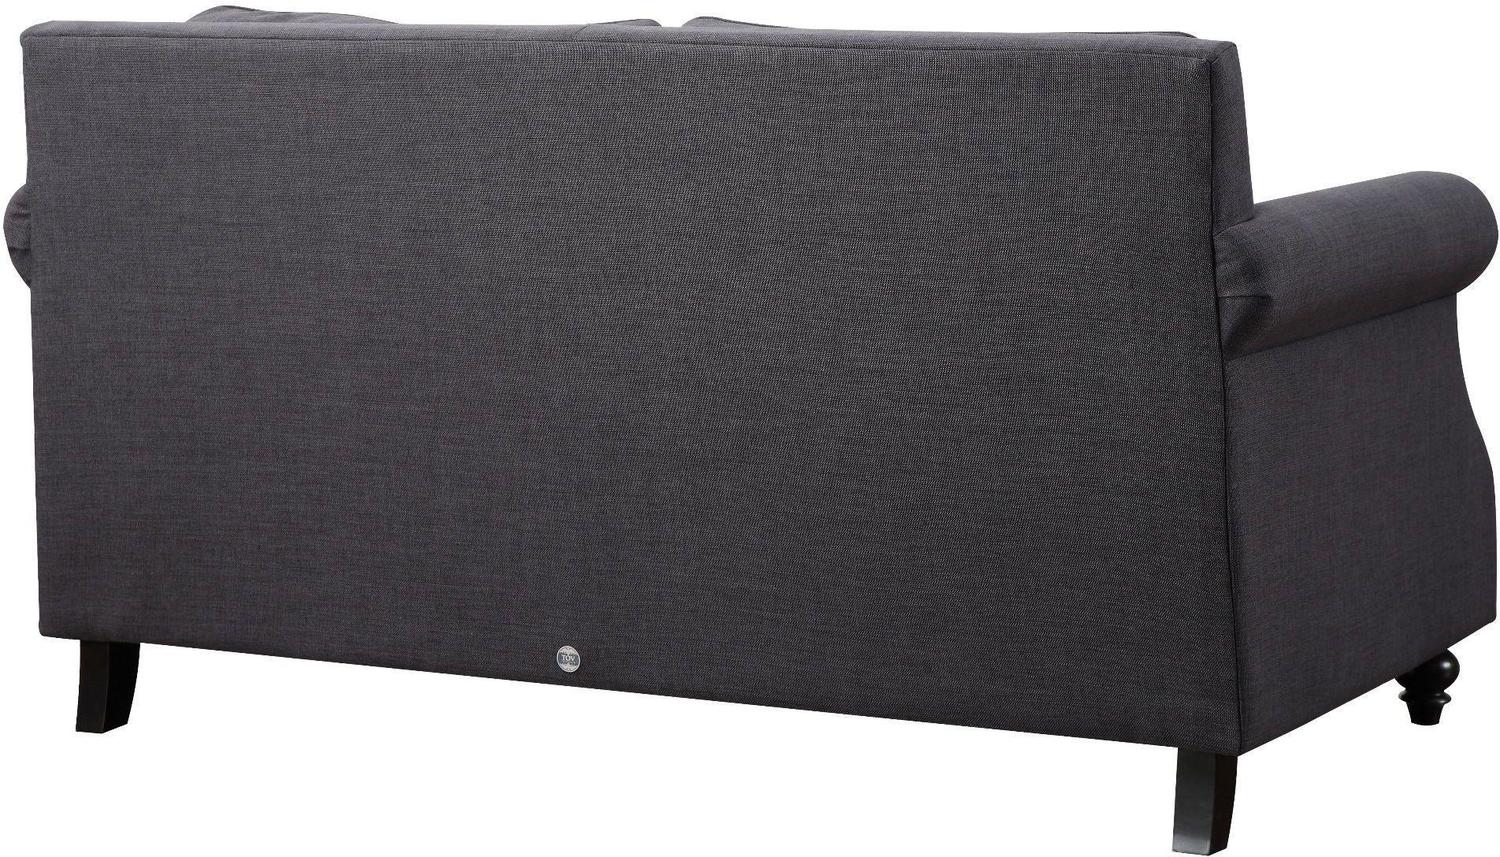 living sofa Contemporary Design Furniture Sofas Grey